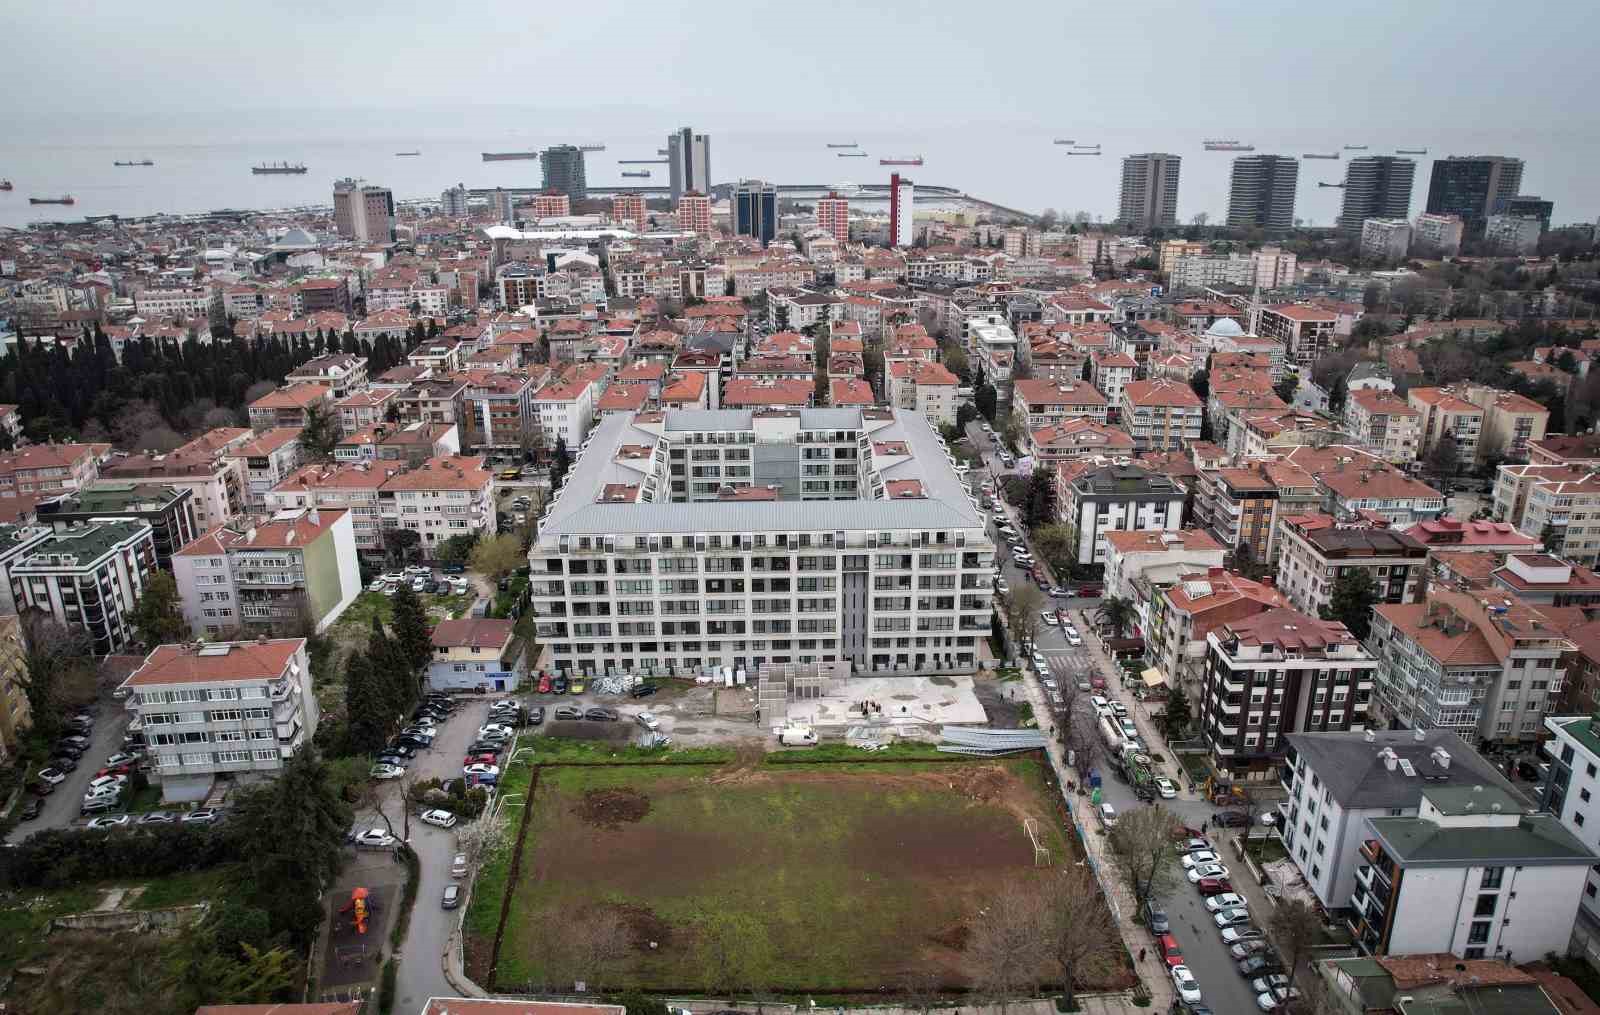 bakırköy’de futbol sahasına yapılan tesis, belediye ile vatandaşı karşı kaşıya getirdi